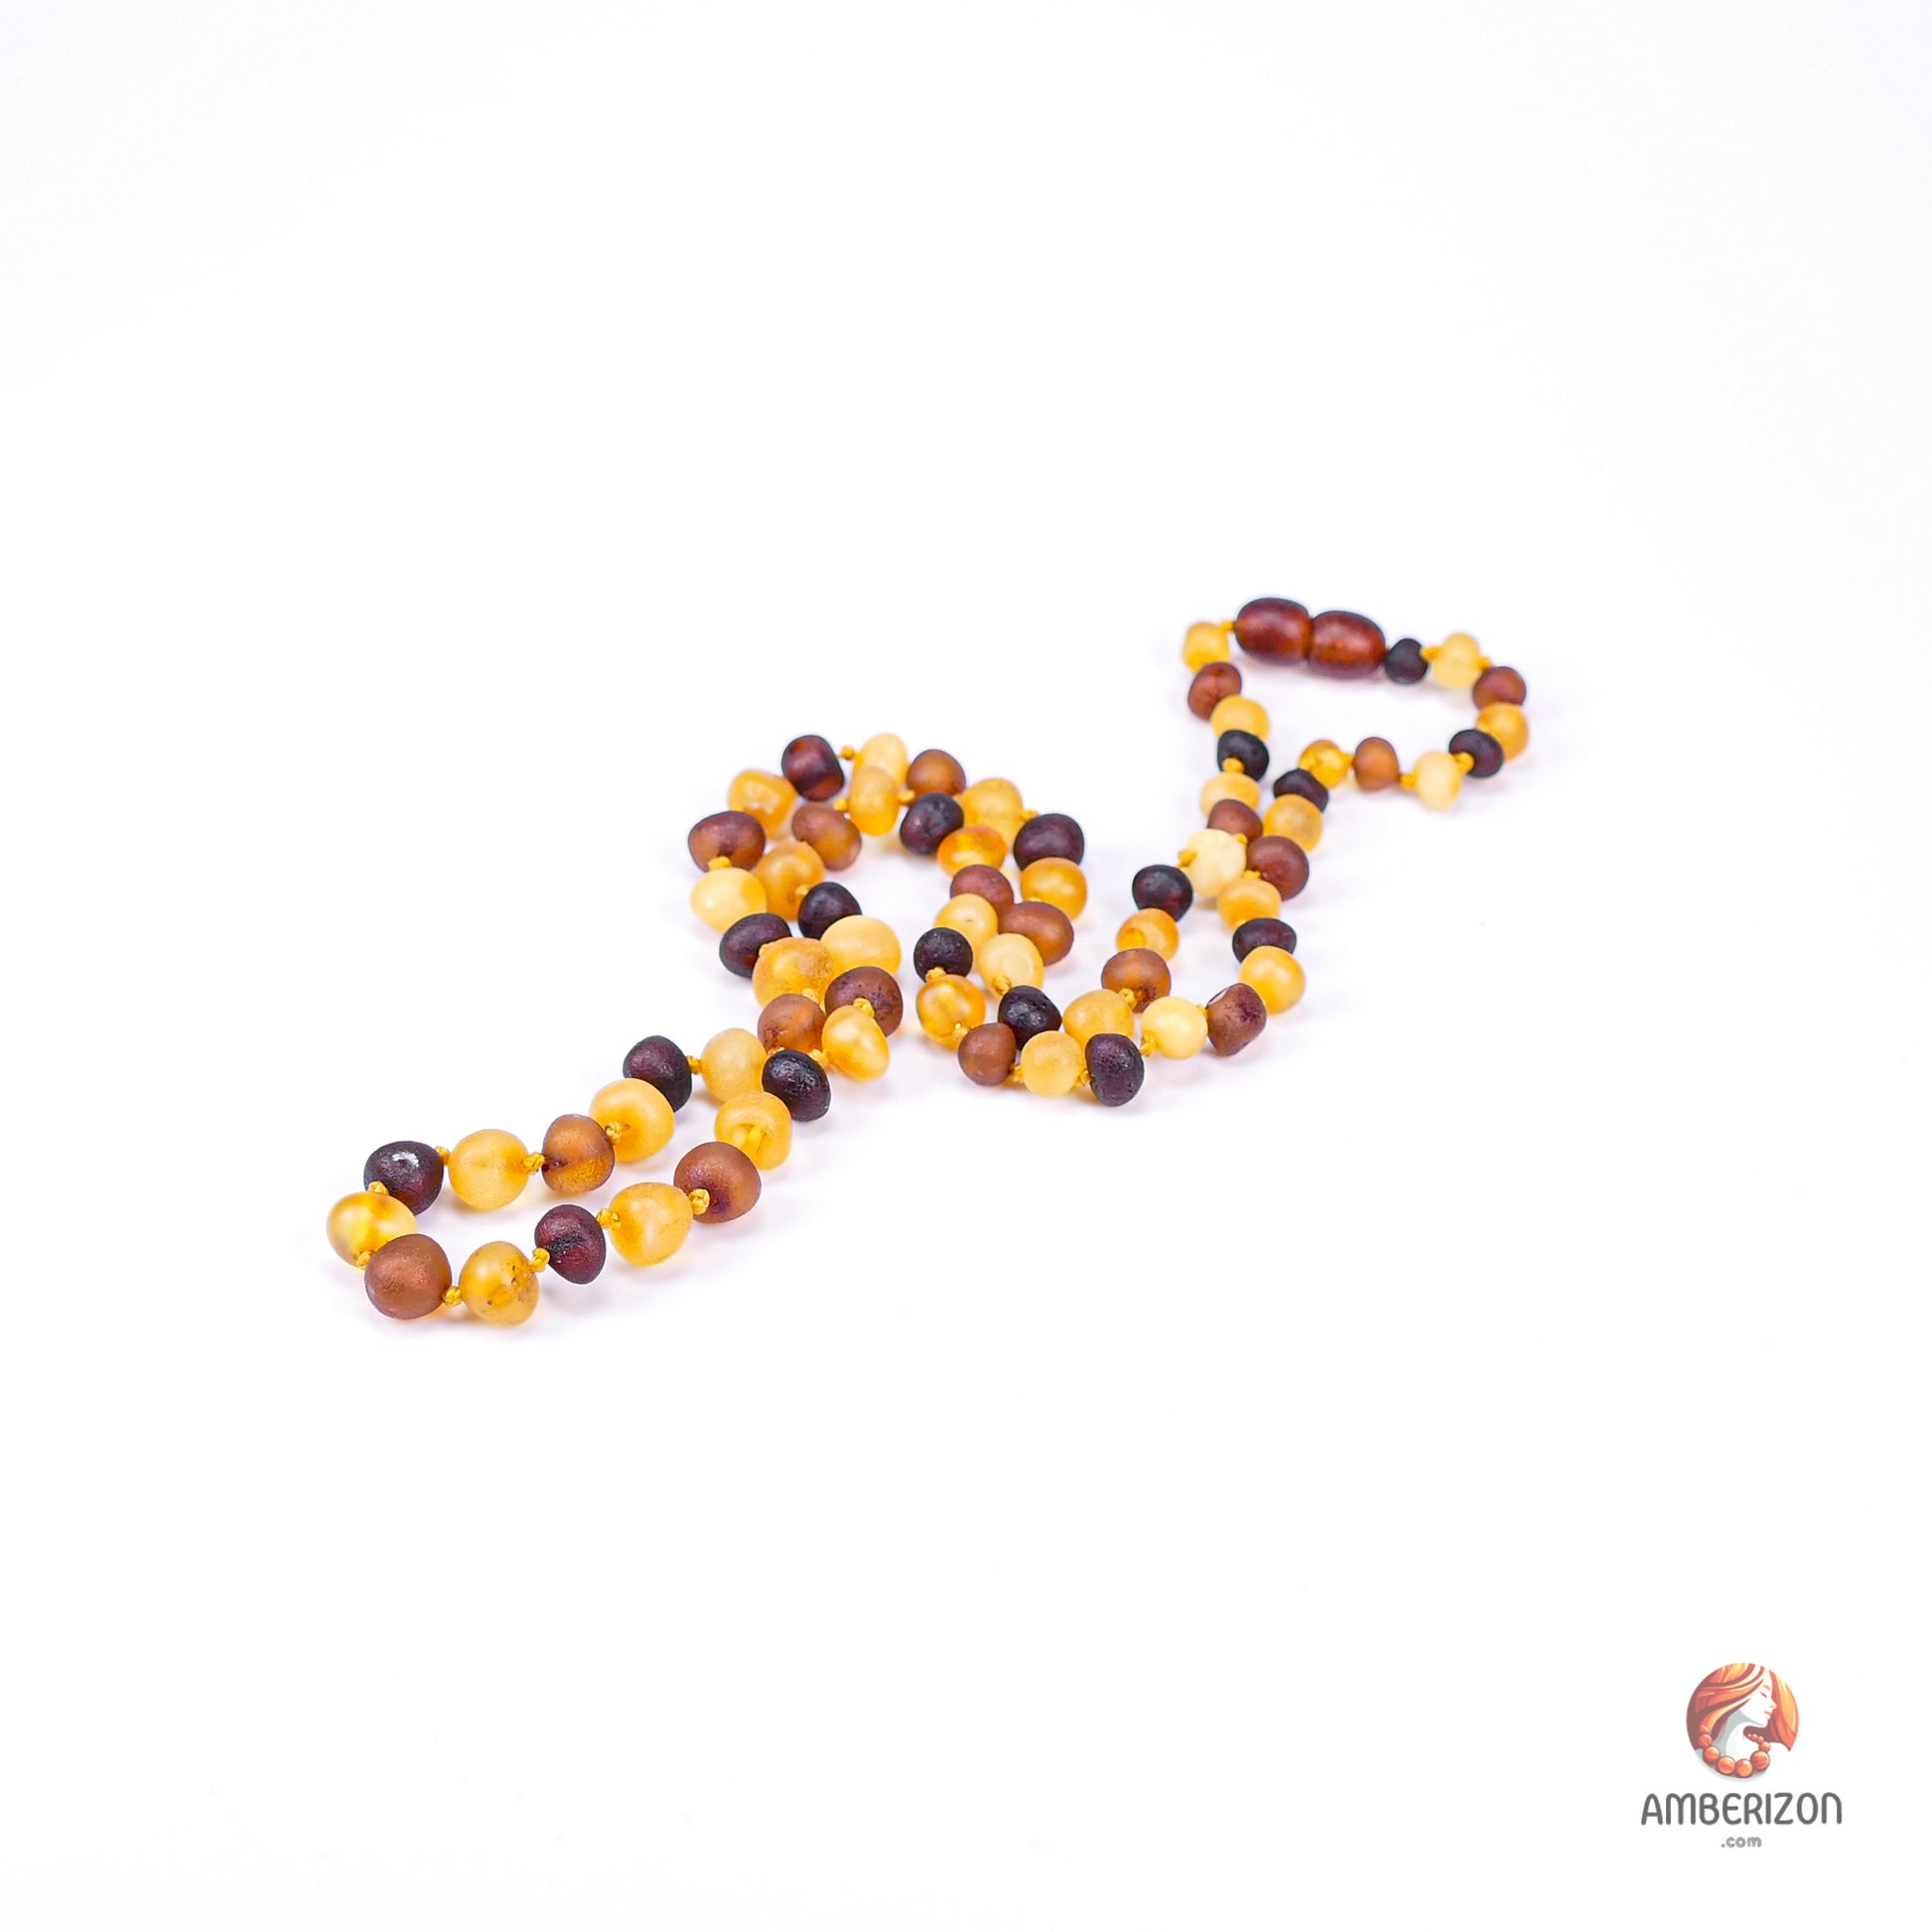 Genuine Baltic amber beads - Healing jewelry 